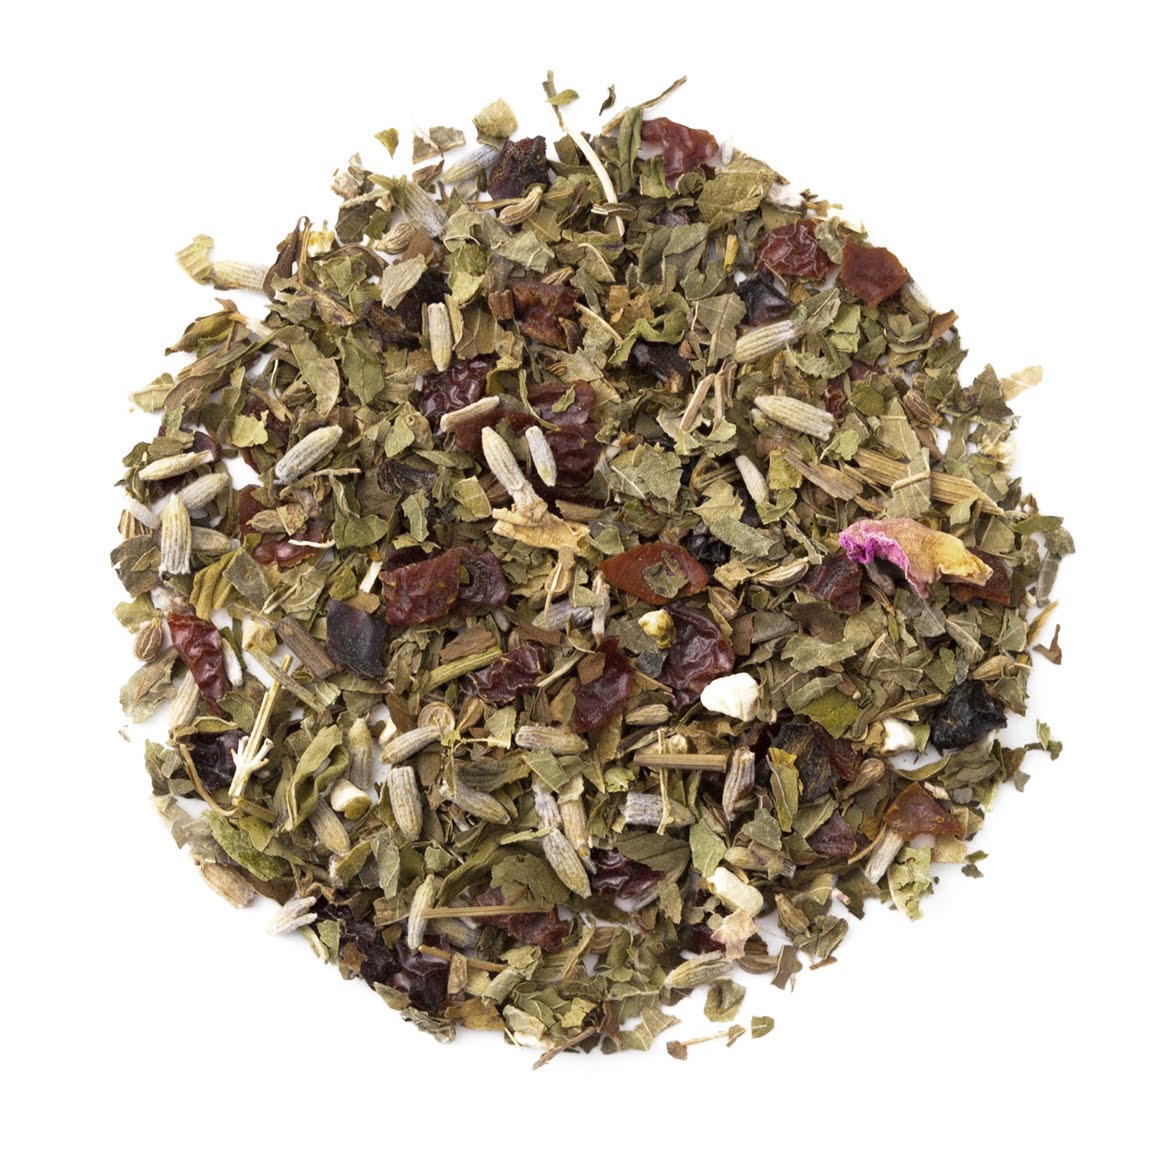 Organic Herbal Cleanse, Loose Leaf Herbal Tea Tin - Organic & Kosher - Heavenly Tea Leaves